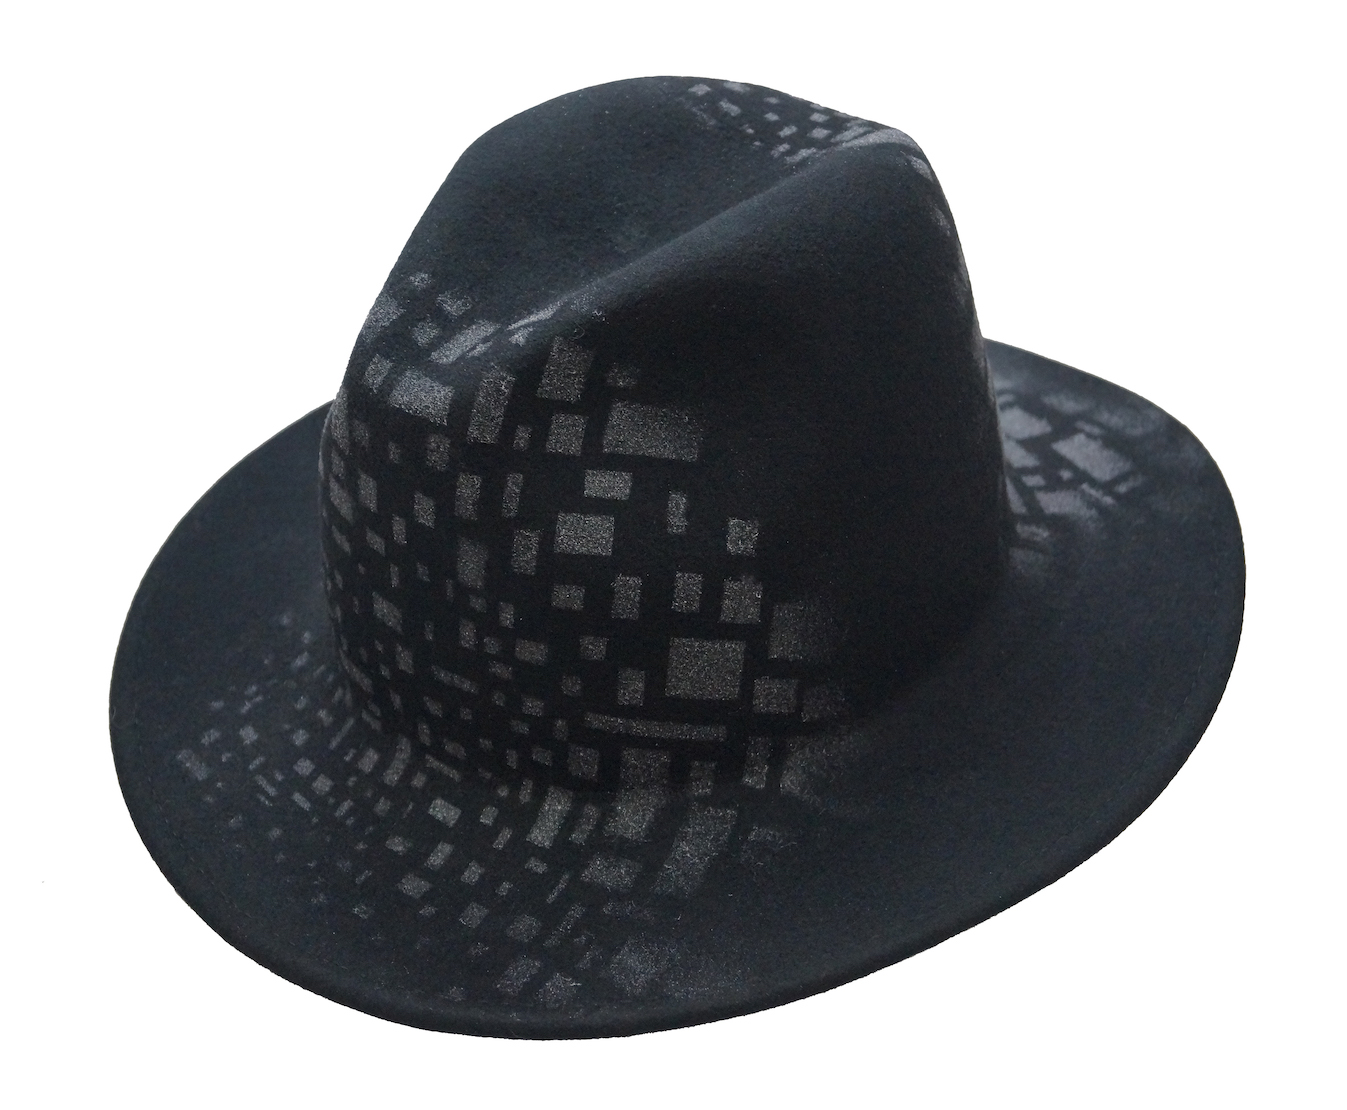 Celine Robert- Urbane hand-painted wool felt fedora hat - black